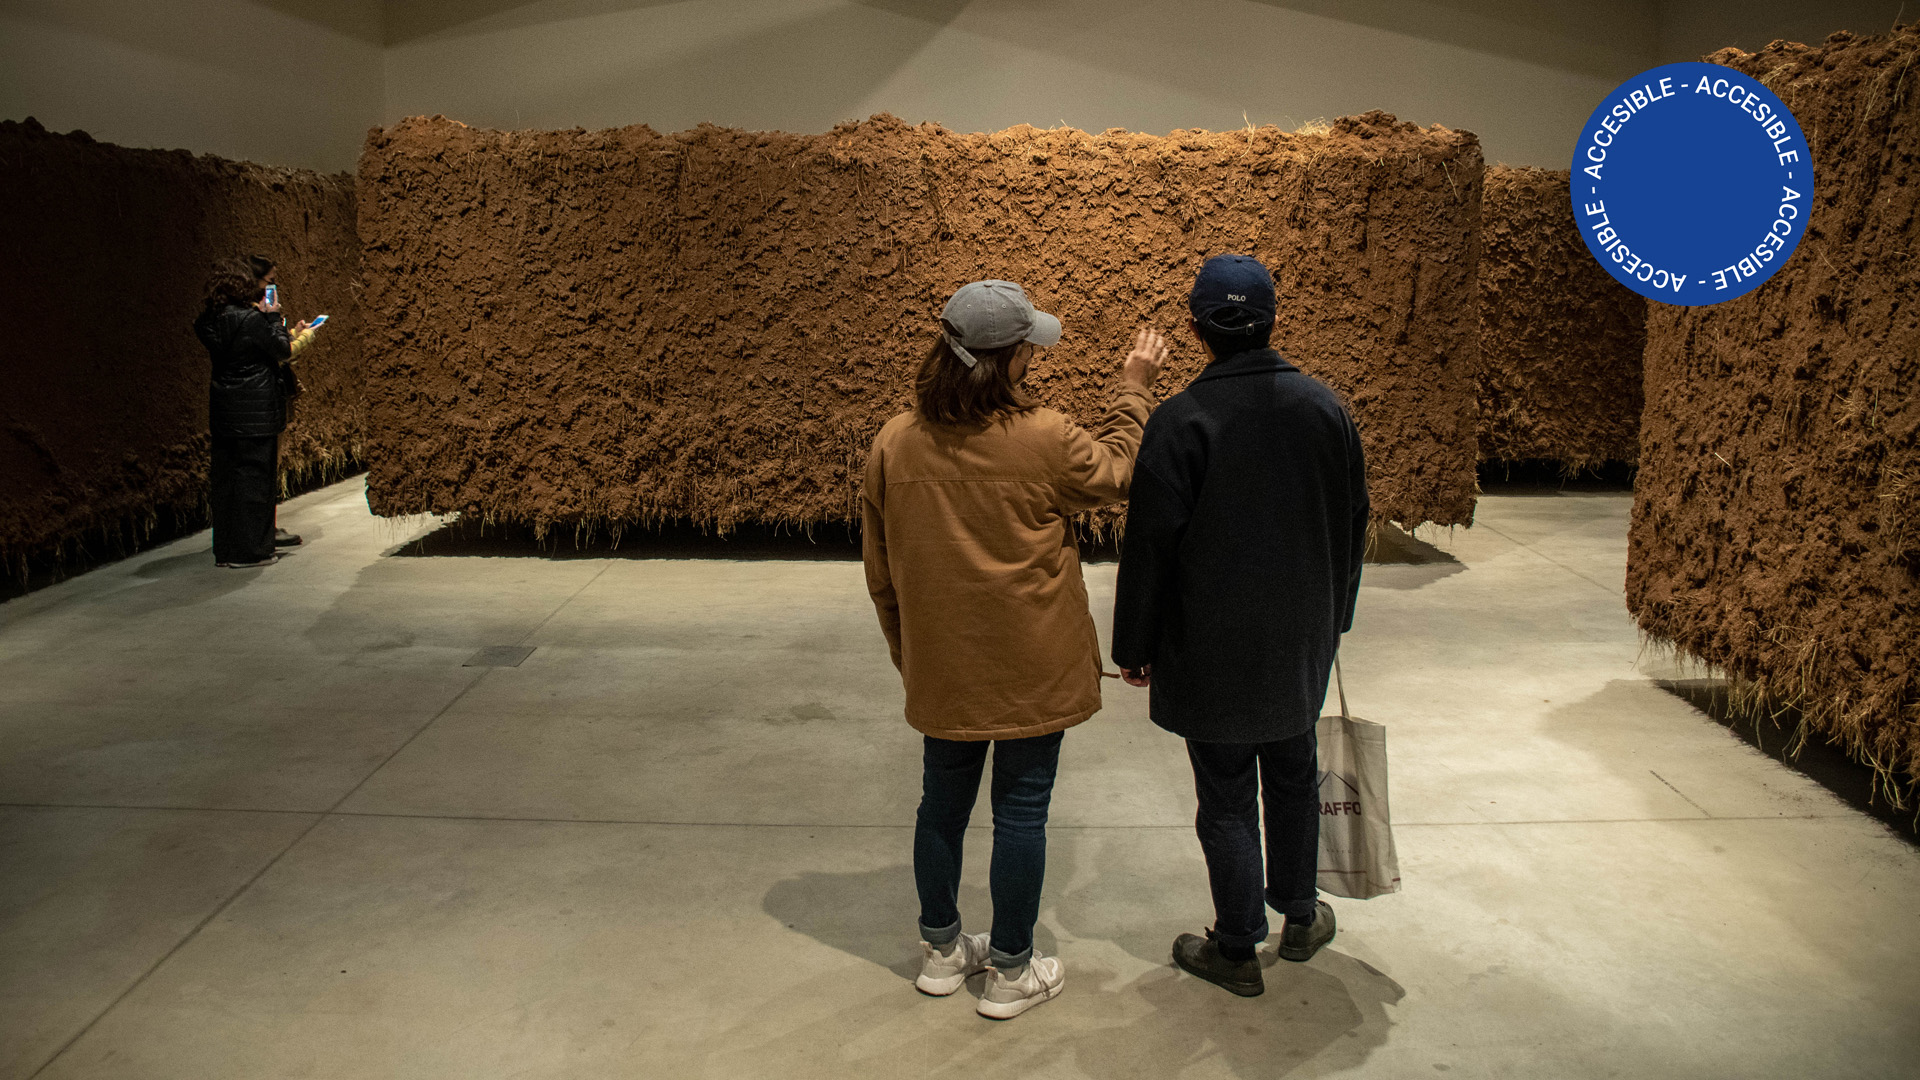 Imagen fotográfica que muestra a personas en la sala de la exposición observando las paredes de tierra que conforman la obra y sacando fotos desde un celular.